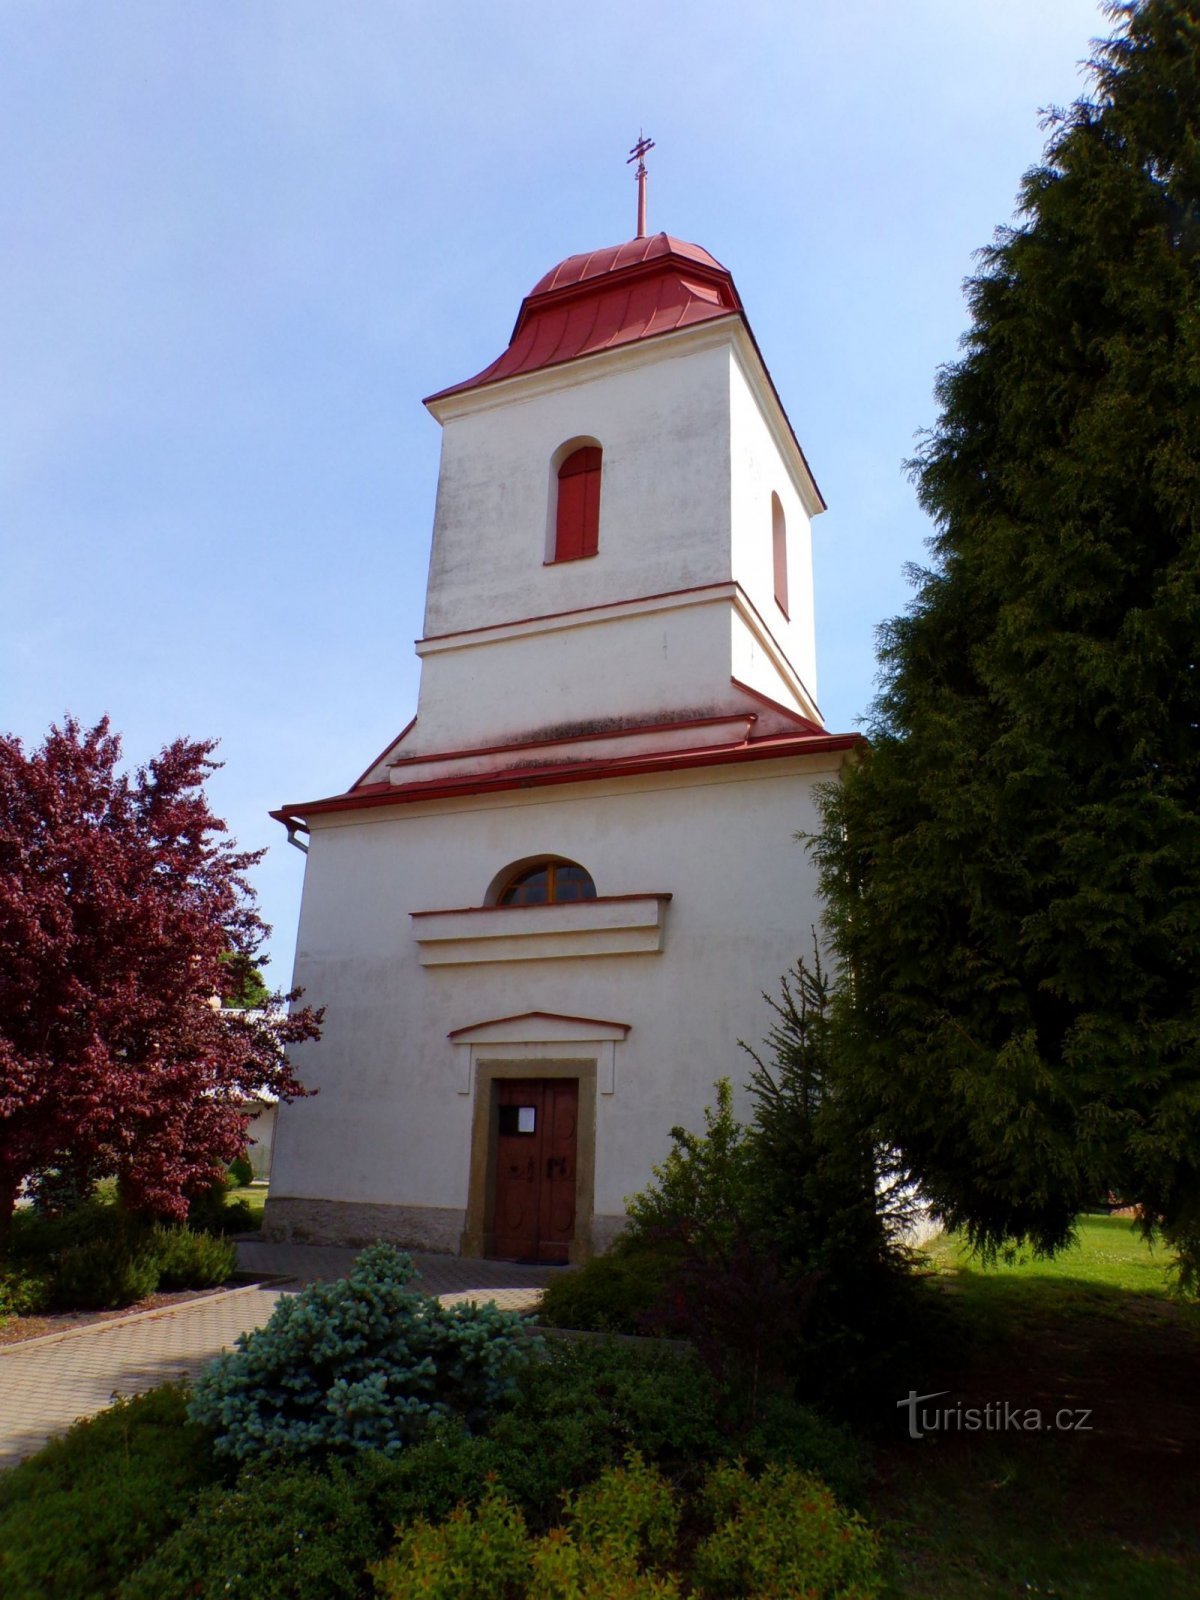 Église de St. Jean-Baptiste (Albrechtice nad Orlicí, 20.5.2022/XNUMX/XNUMX)